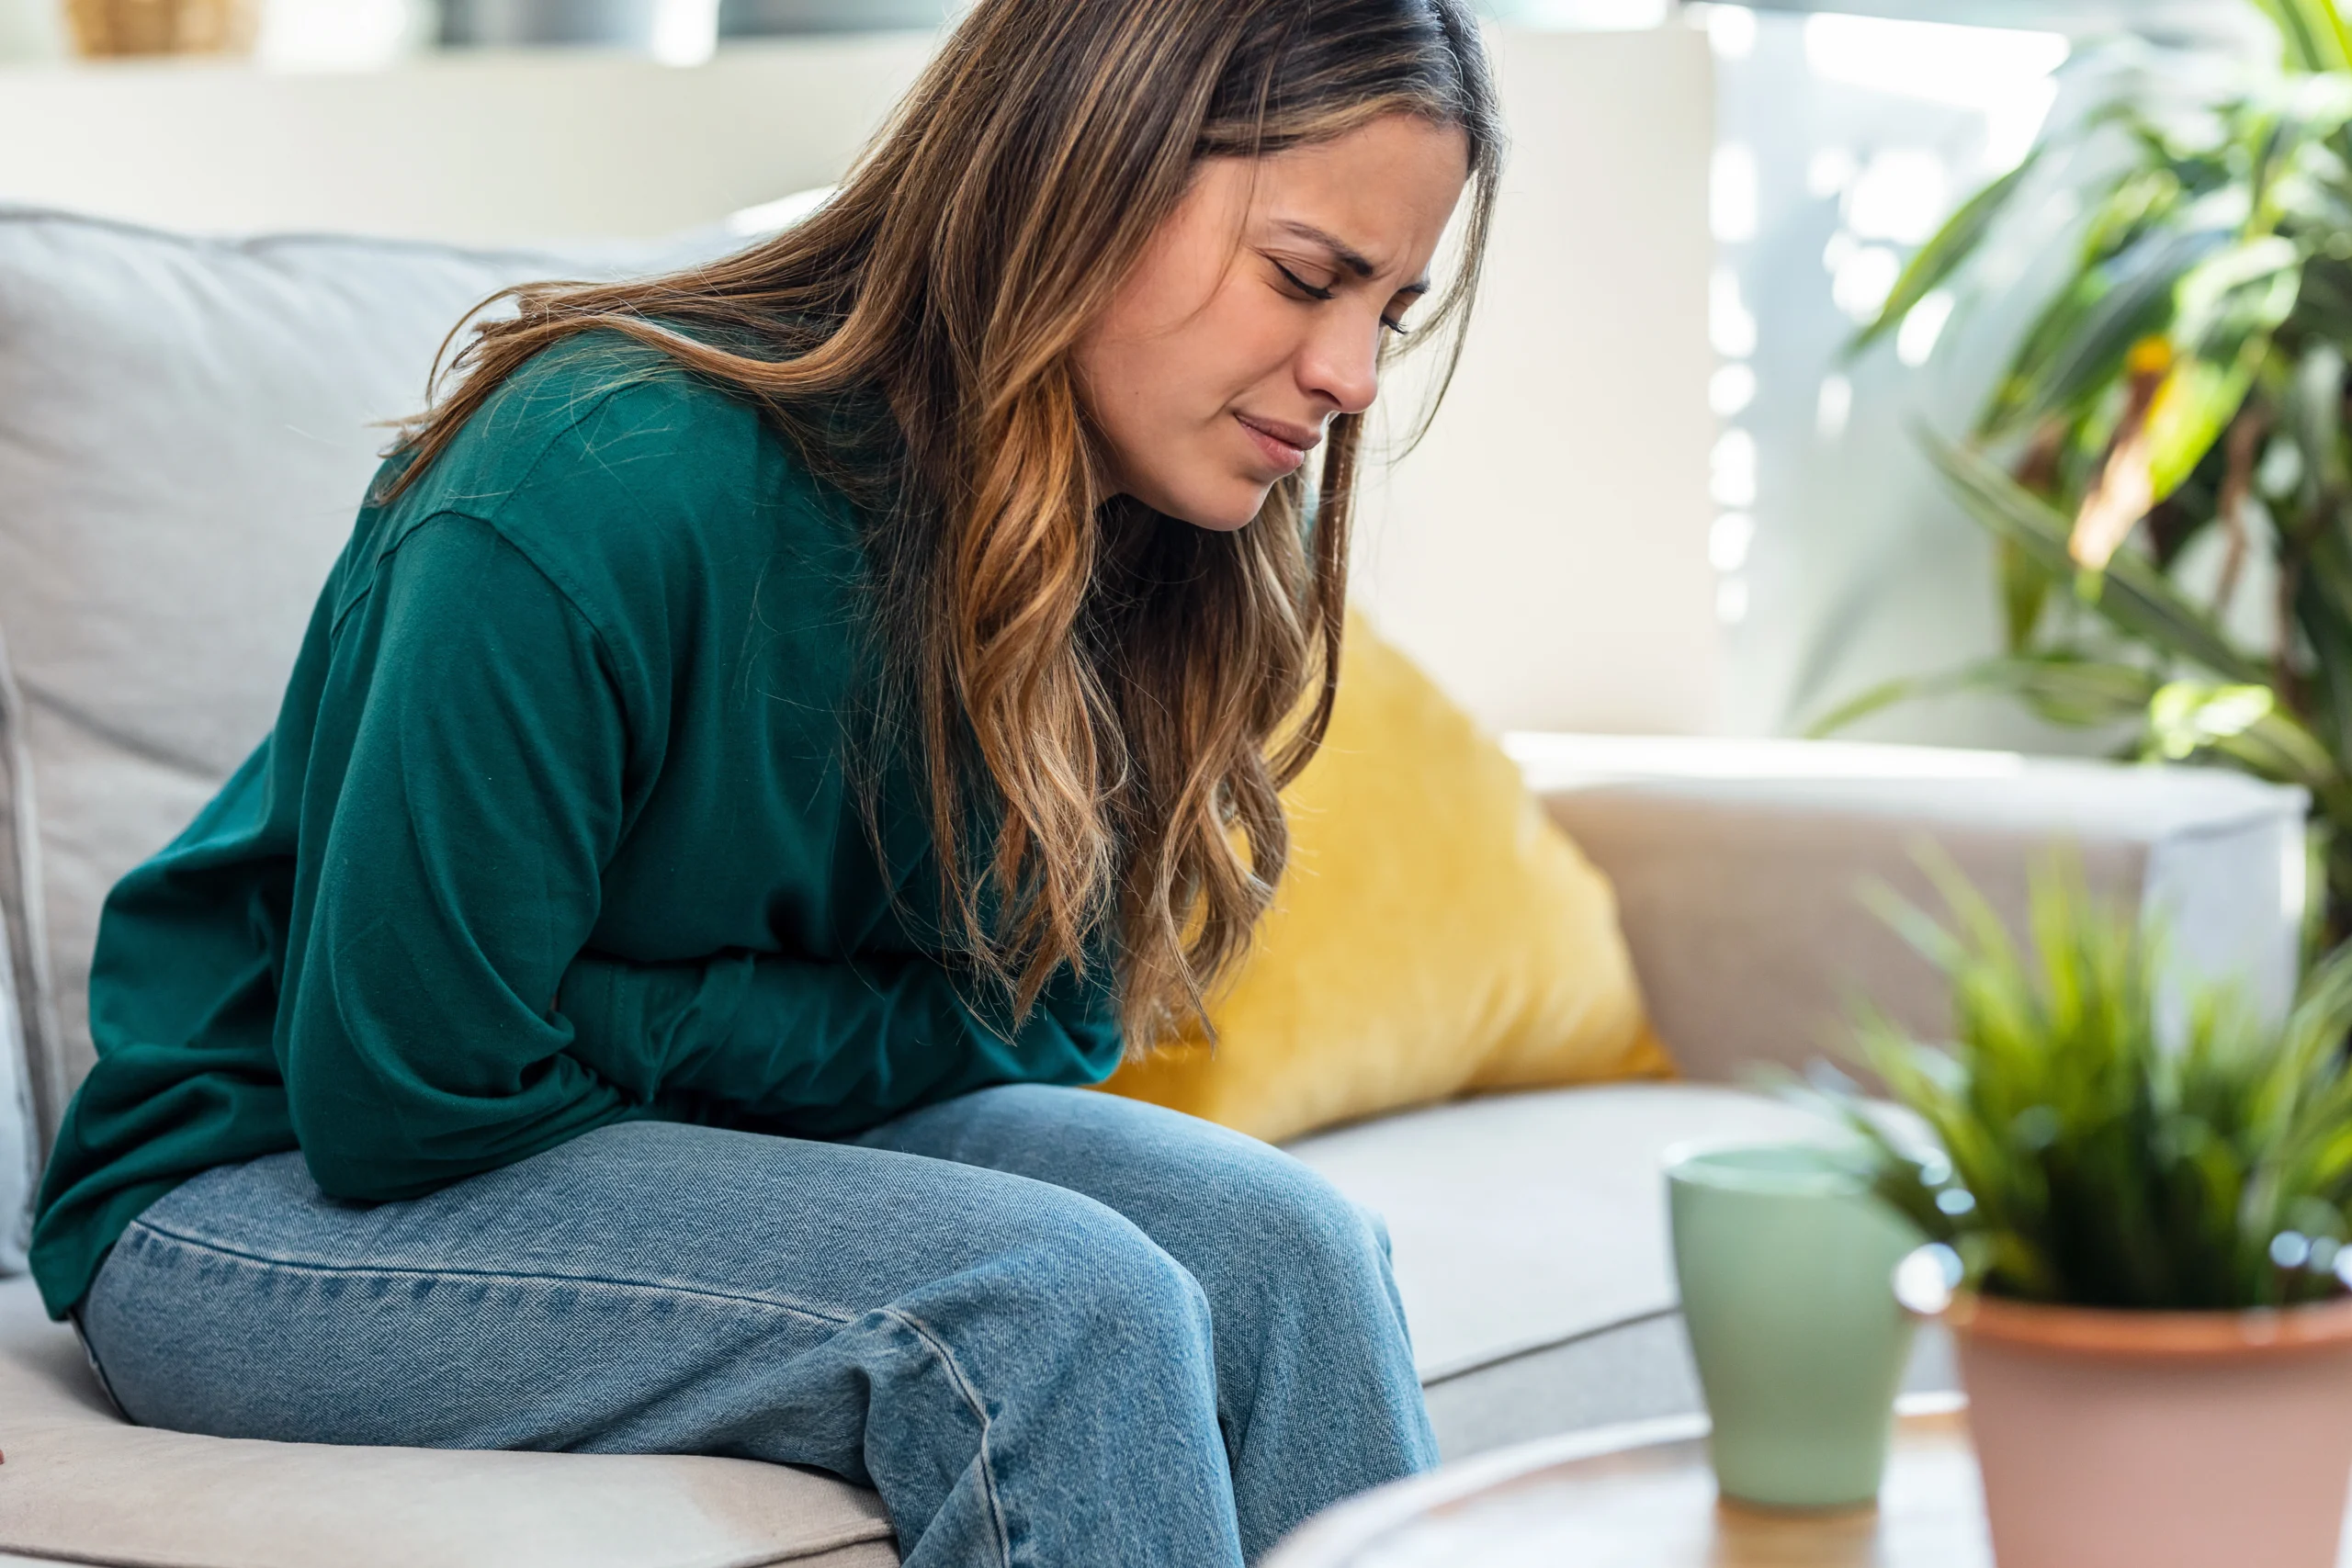 Czy osłabienie po antybiotyku jest normalne i jak sobie pomóc? Na jakie objawy i skutki uboczne po antybiotyku zwrócić uwagę? Kobieta w zielonej bluzie i jeansach siedzi na kanapie w salonie i trzyma się za bolący brzuch.